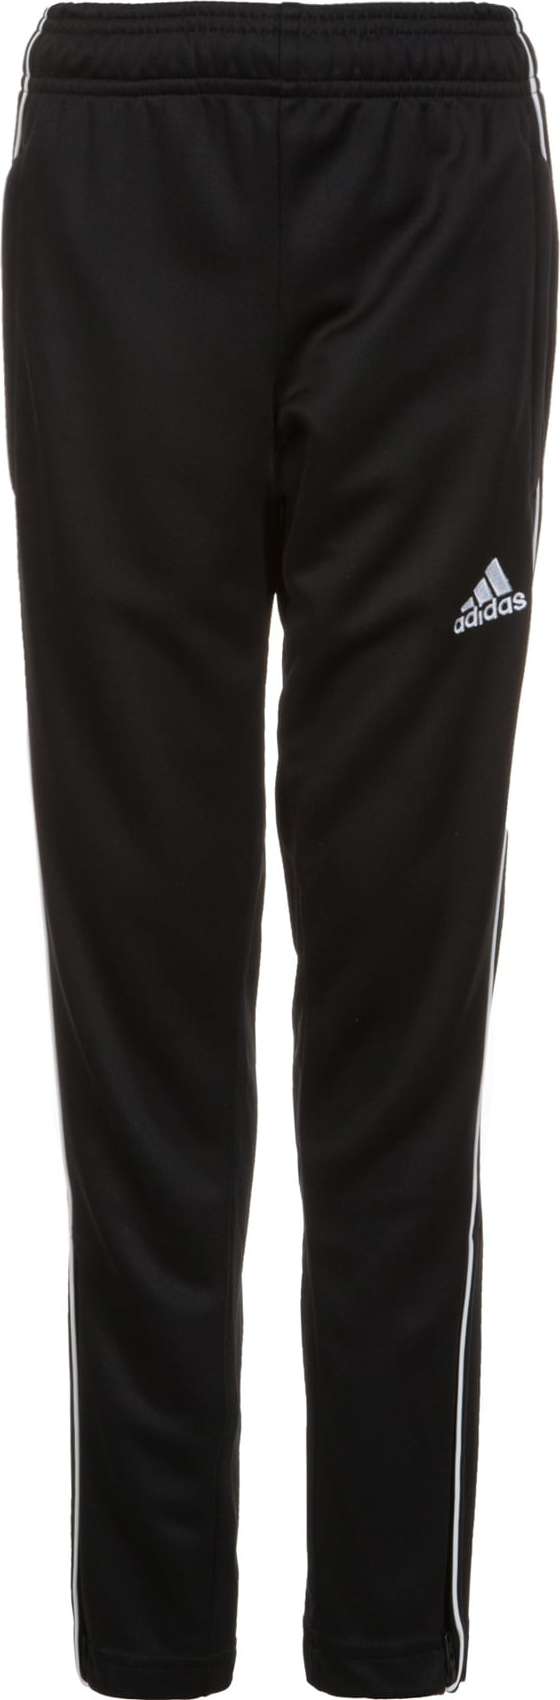 ADIDAS SPORTSWEAR Sportovní kalhoty 'Core 18' černá / bílá